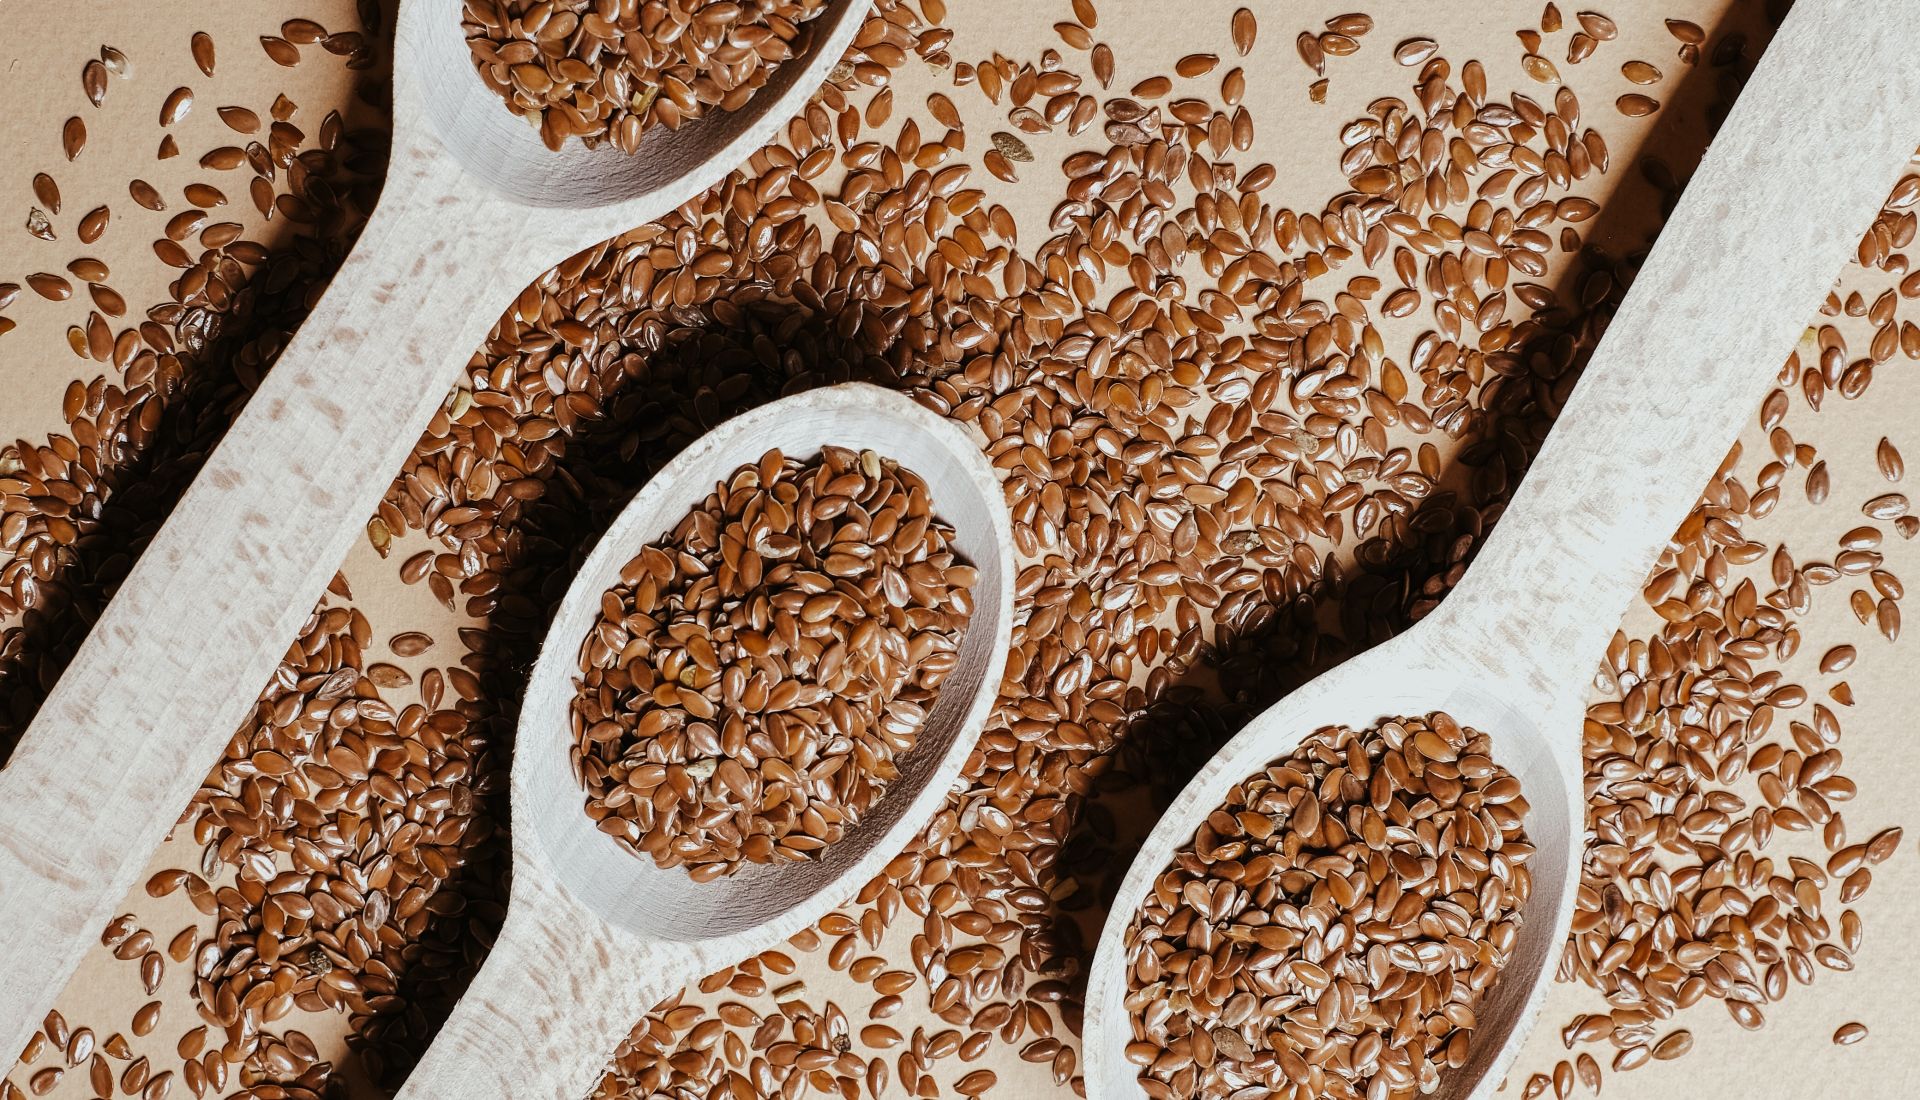 Les fibres et confection de barres de céréales